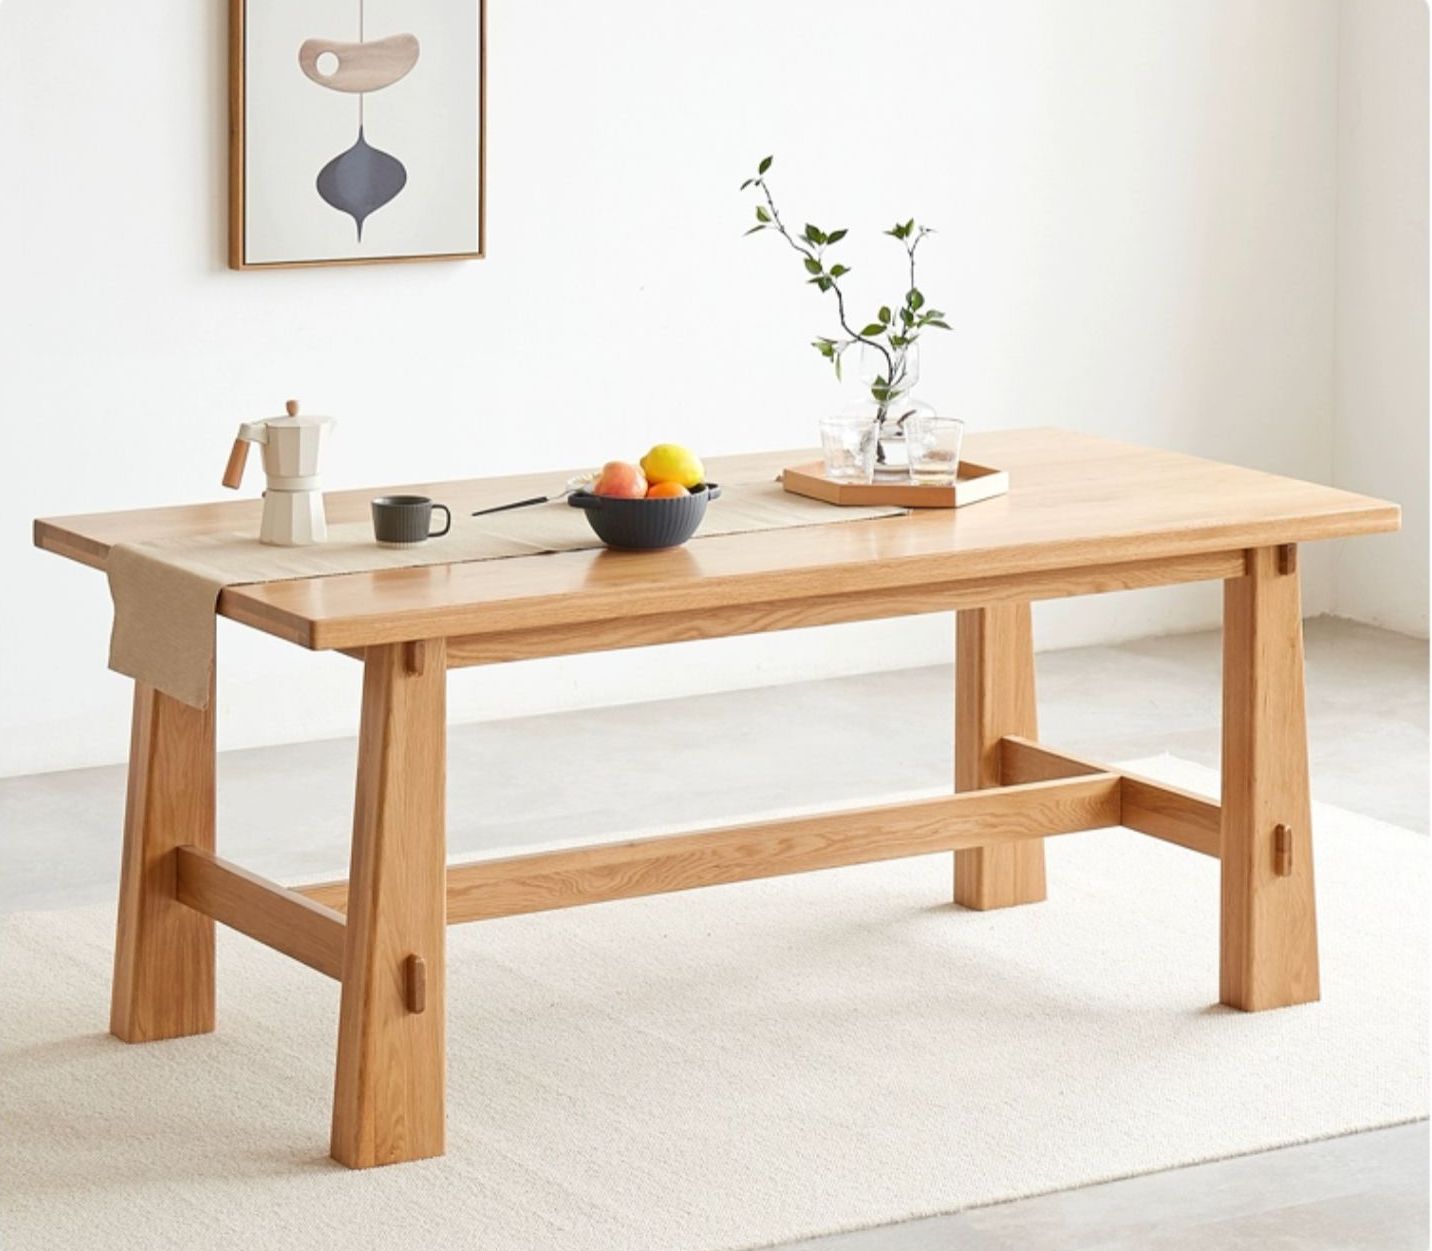 طاولة طعام من خشب البلوط الصلب في منتصف القرن، وطاولة من خشب البلوط الصلب